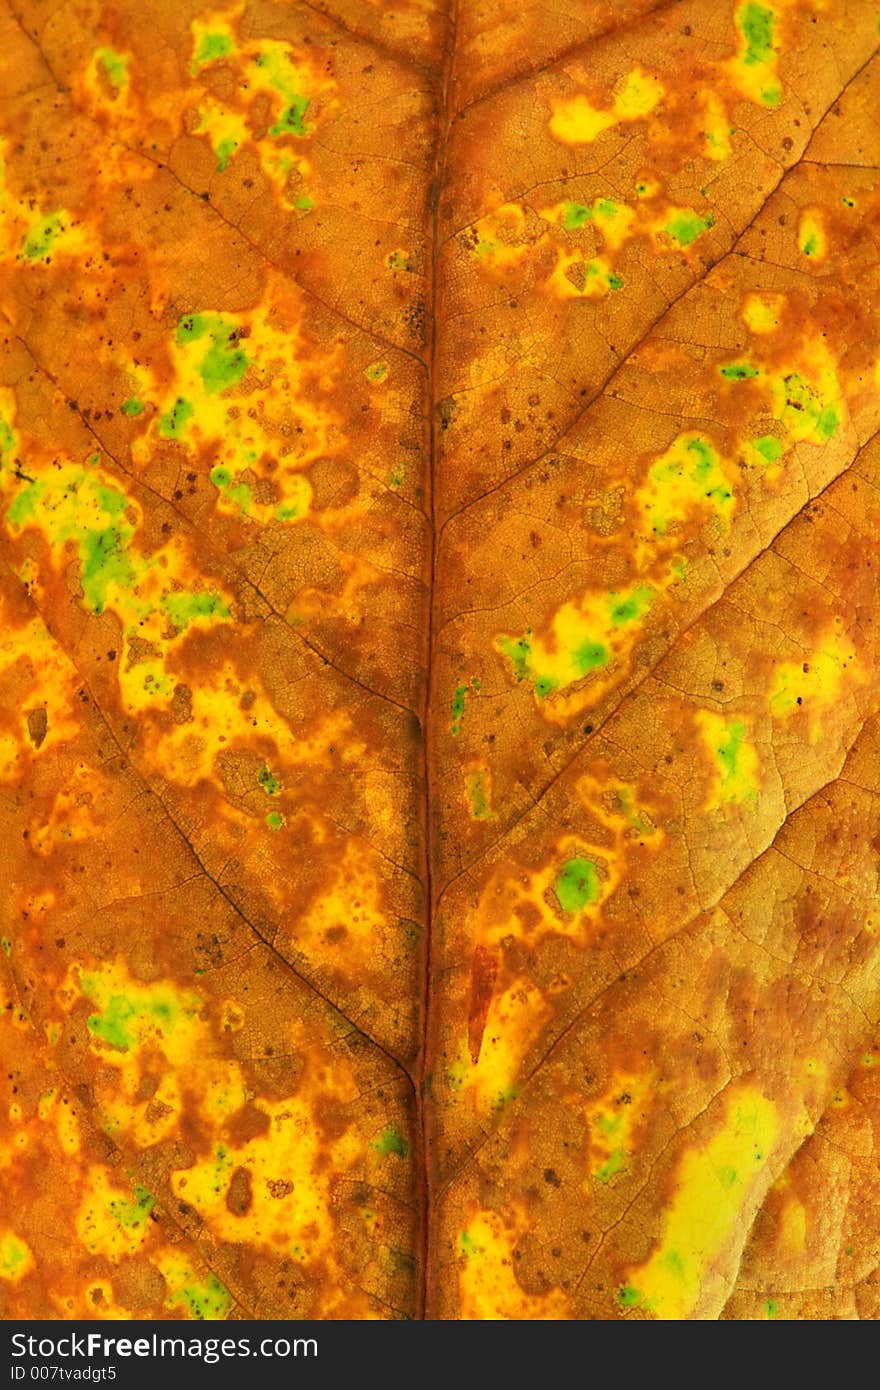 Macro close-up of fallen autumn leaf. Macro close-up of fallen autumn leaf